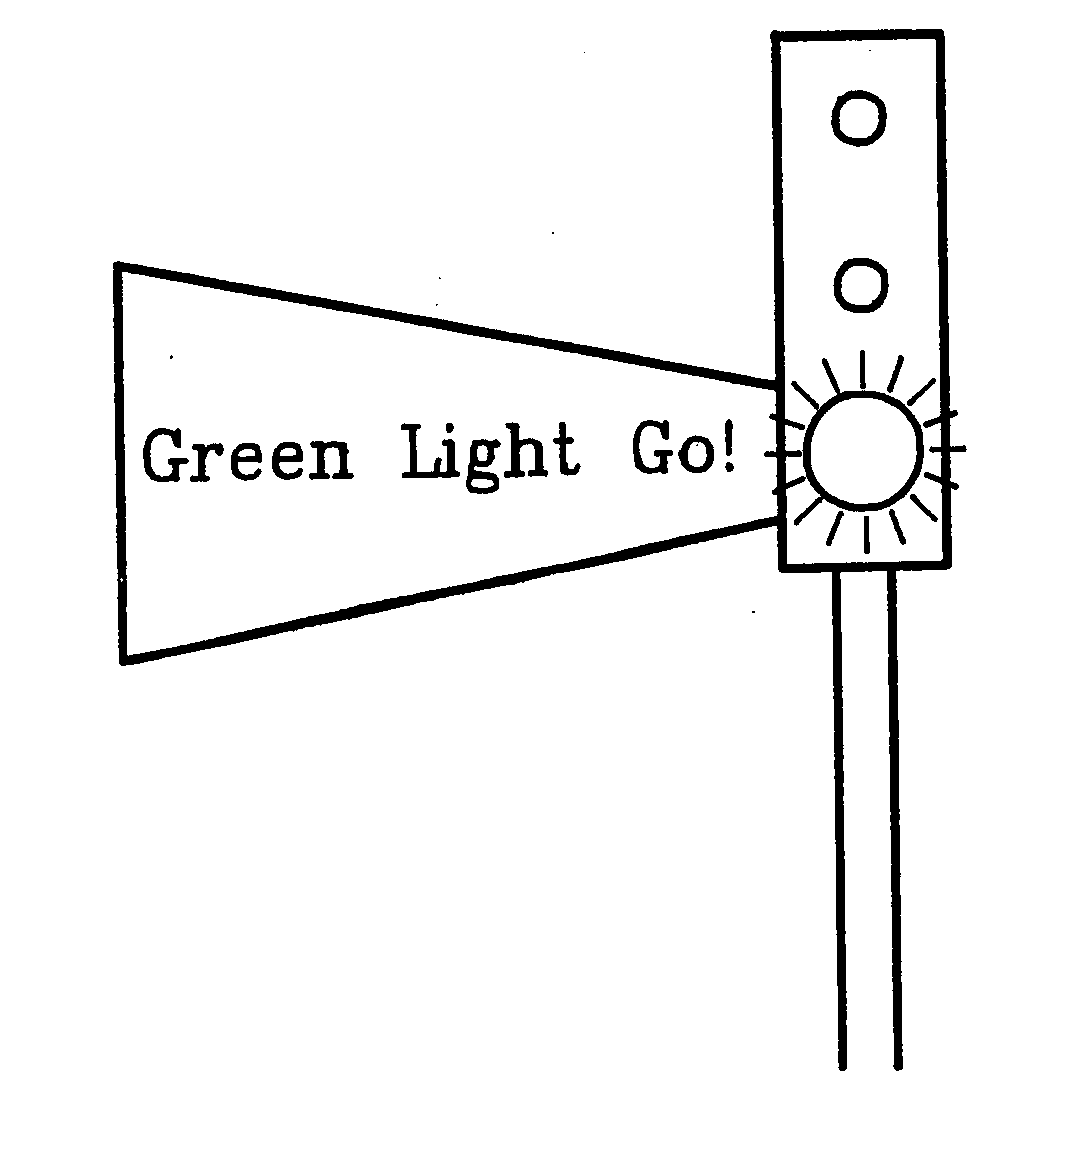  GREEN LIGHT GO!